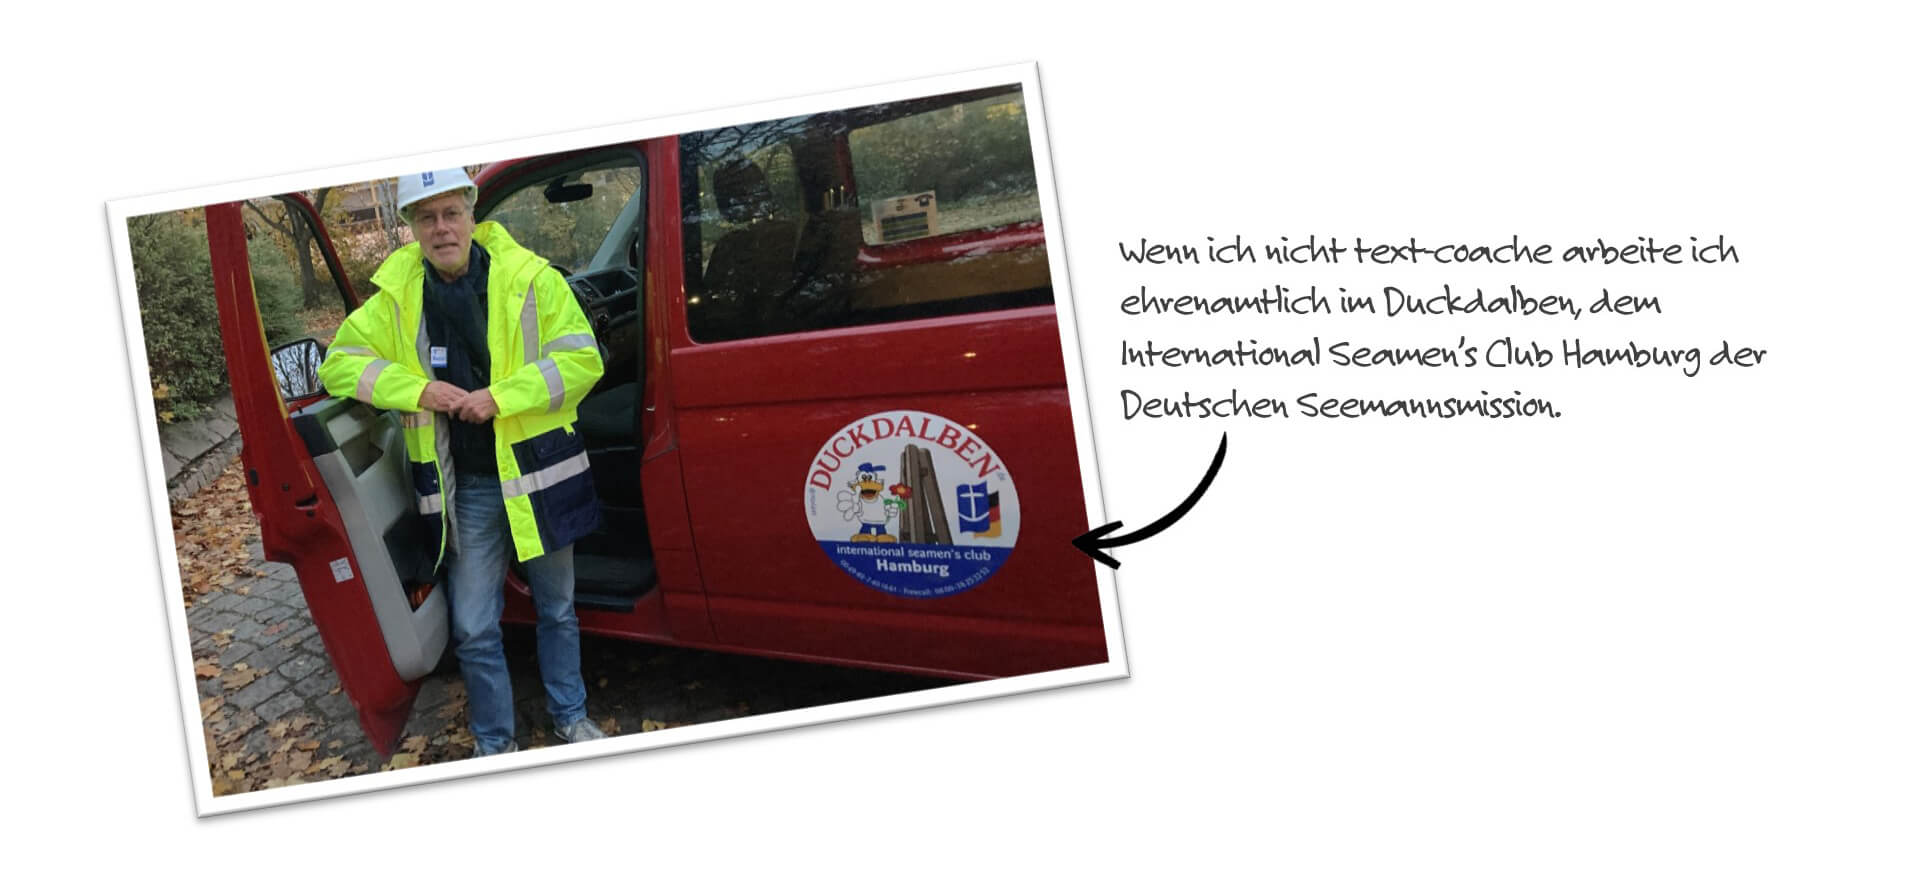 Wenn ich nicht text-coache arbeite ich ehrenamtlich im Duckdalben, dem  International Seamen’s Club Hamburg der Deutschen Seemannsmission.